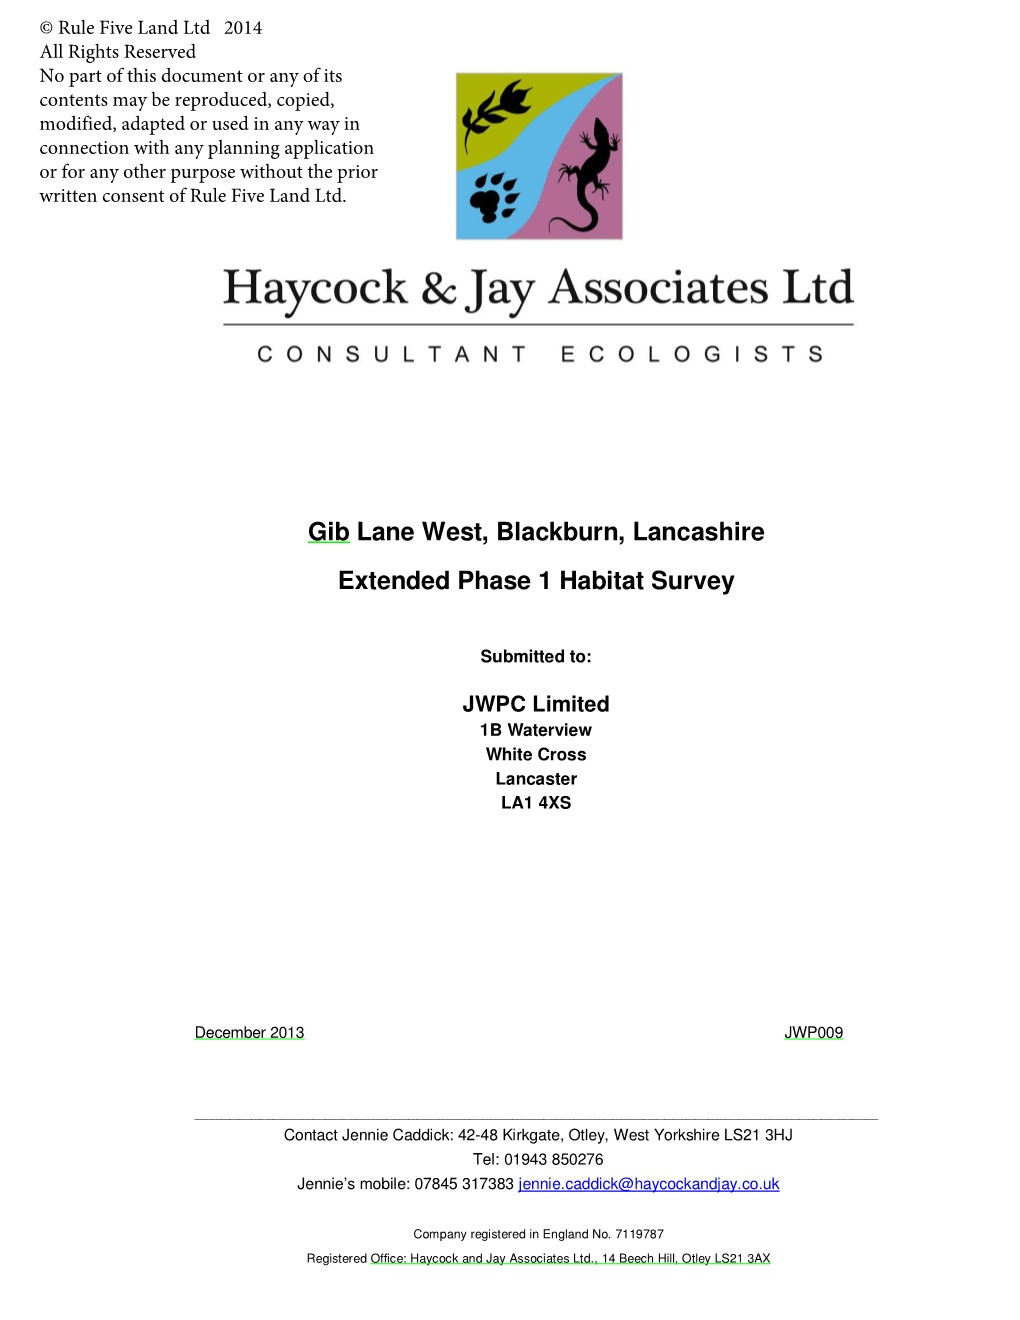 Gib Lane West, Blackburn, Lancashire Extended Phase 1 Habitat Survey